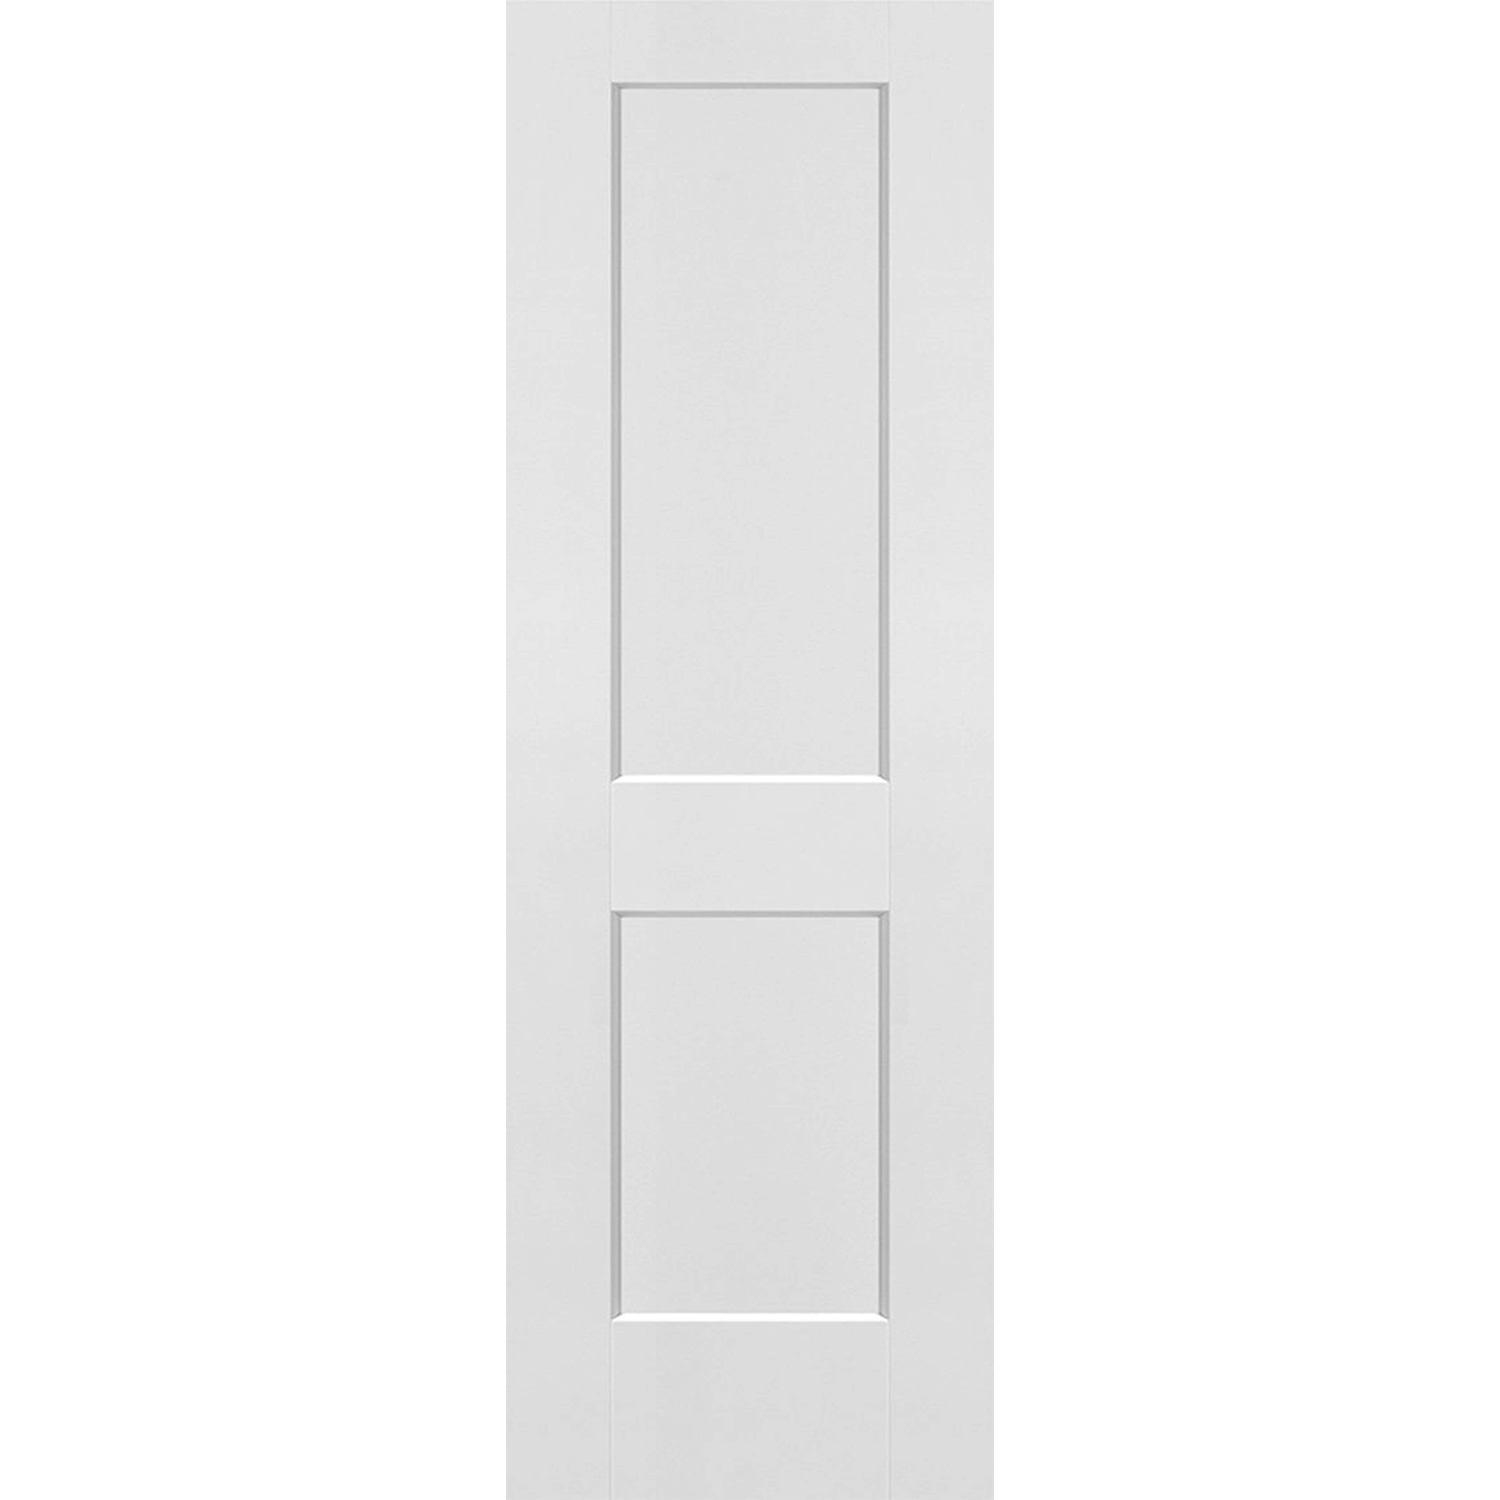 2 Panel Solid Door - 26 x 80